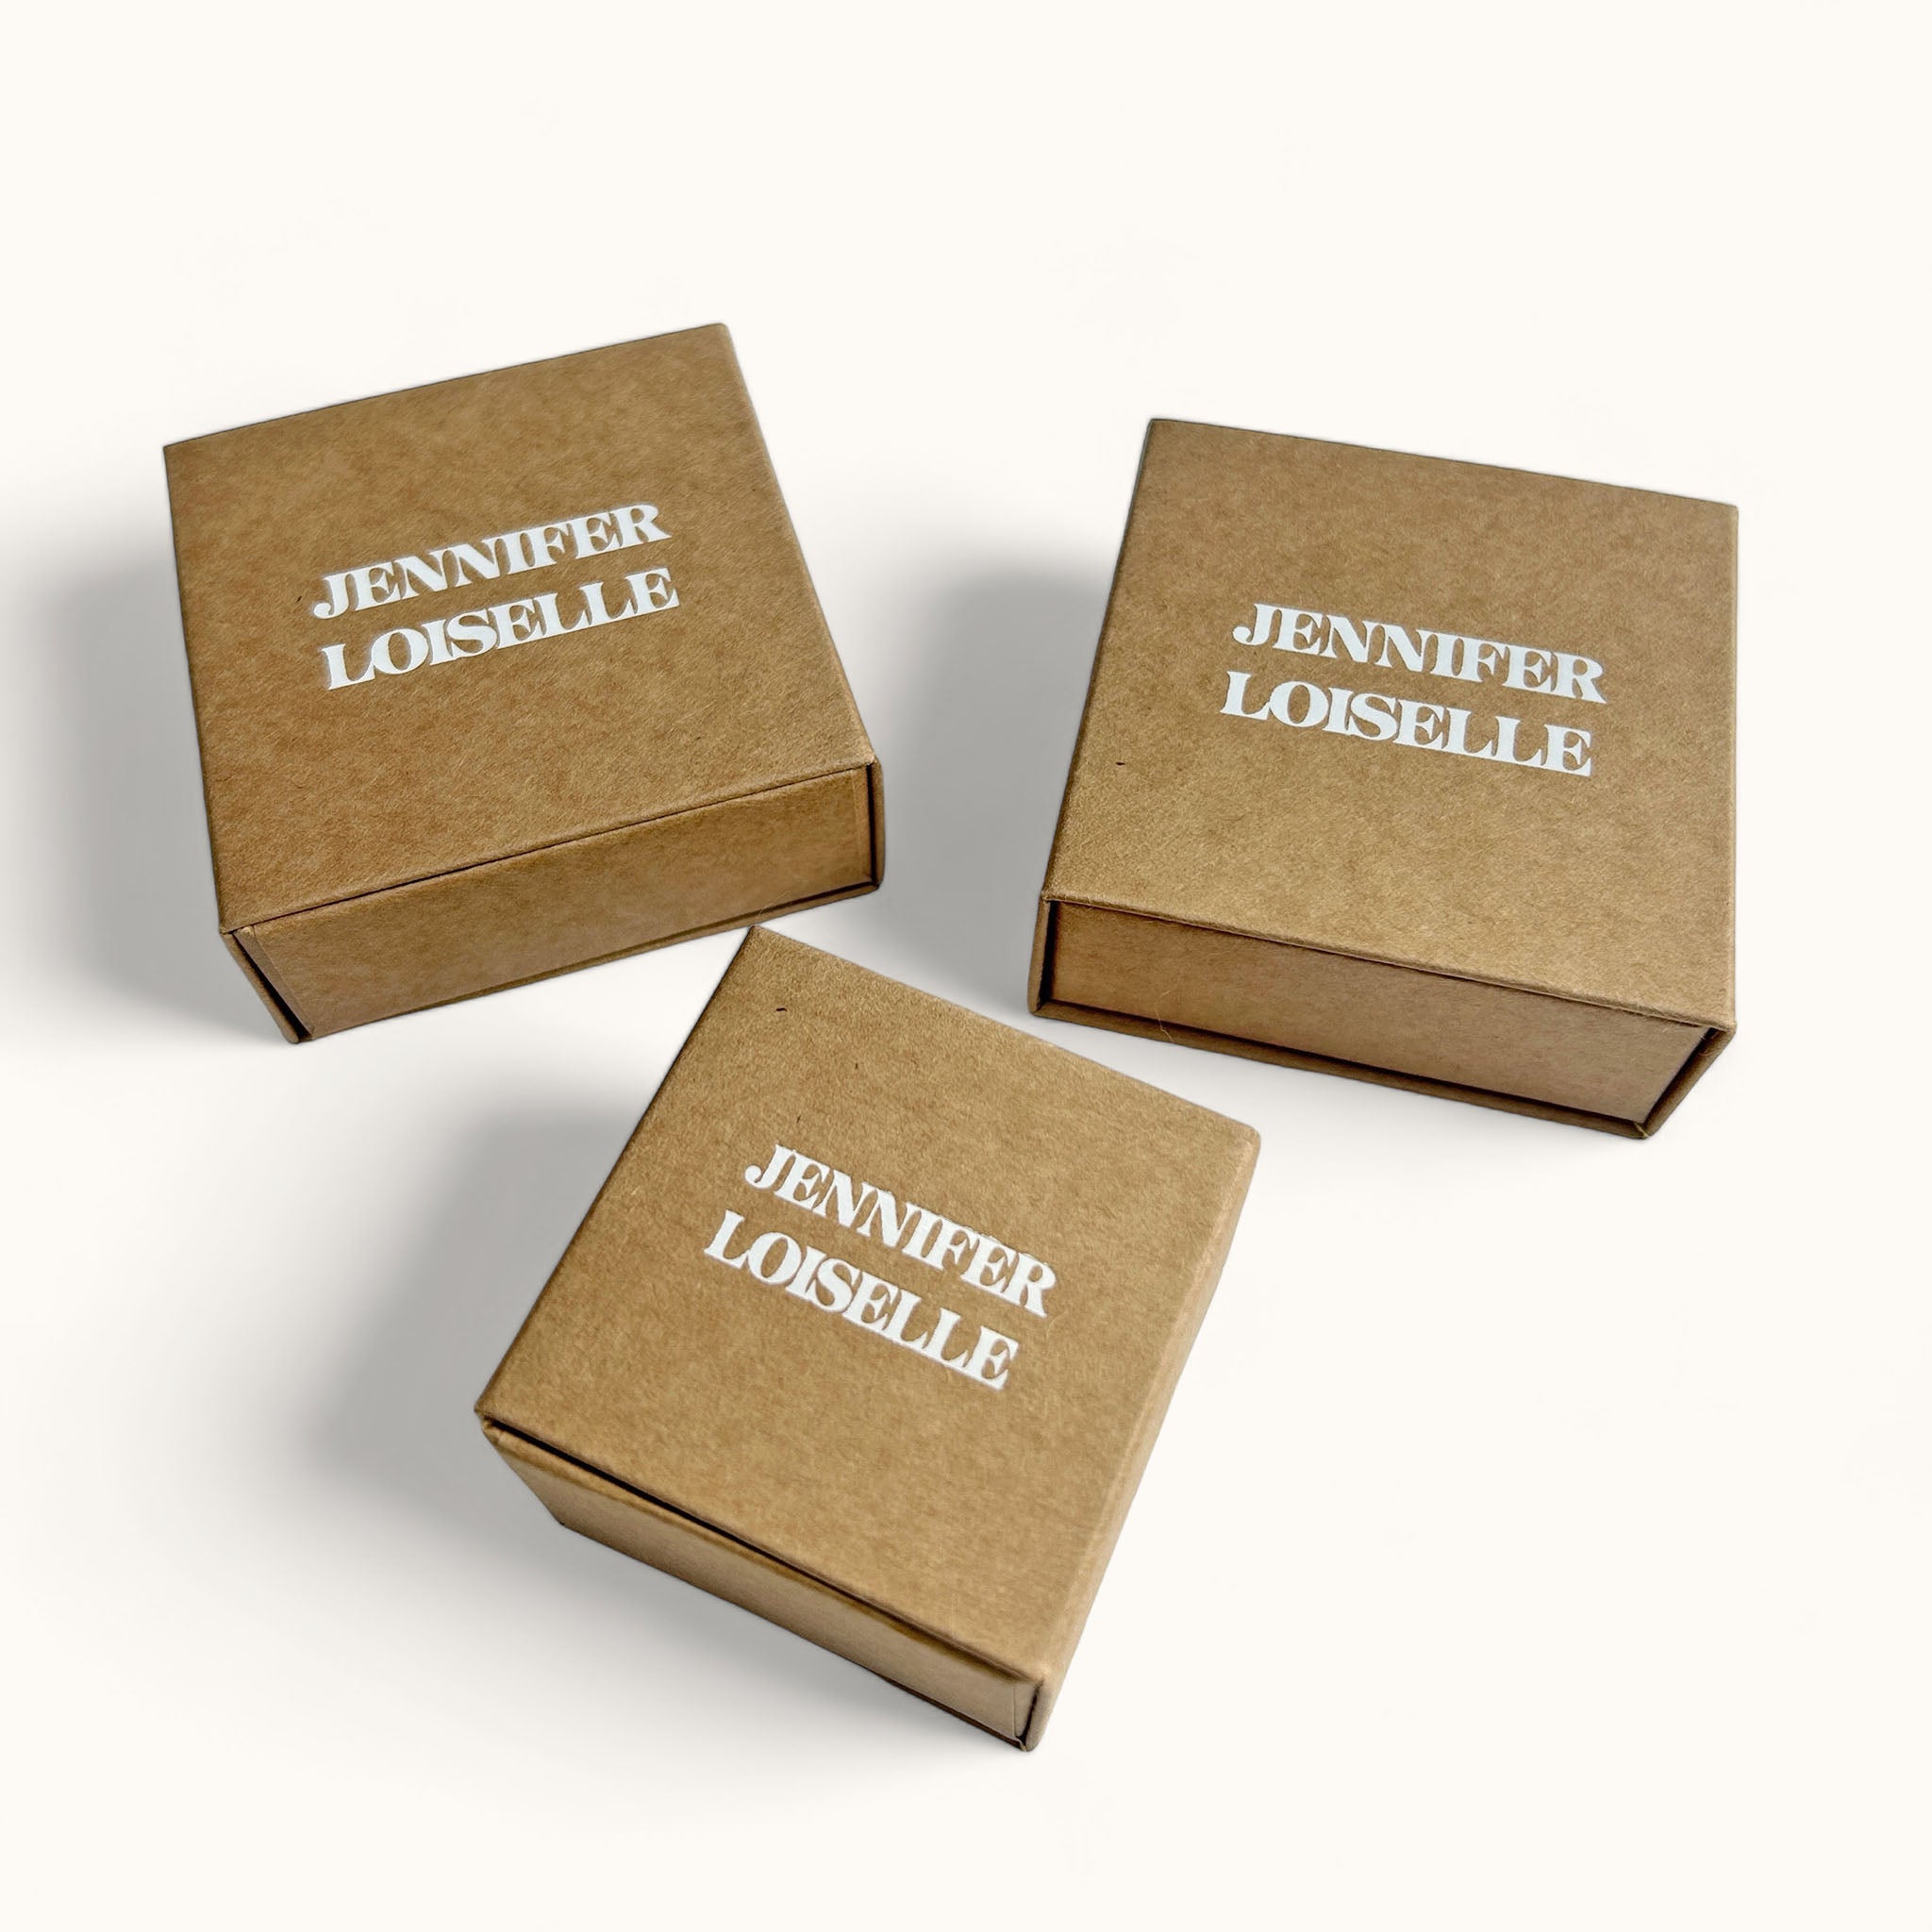 Jennifer Loiselle jewellery box packaging